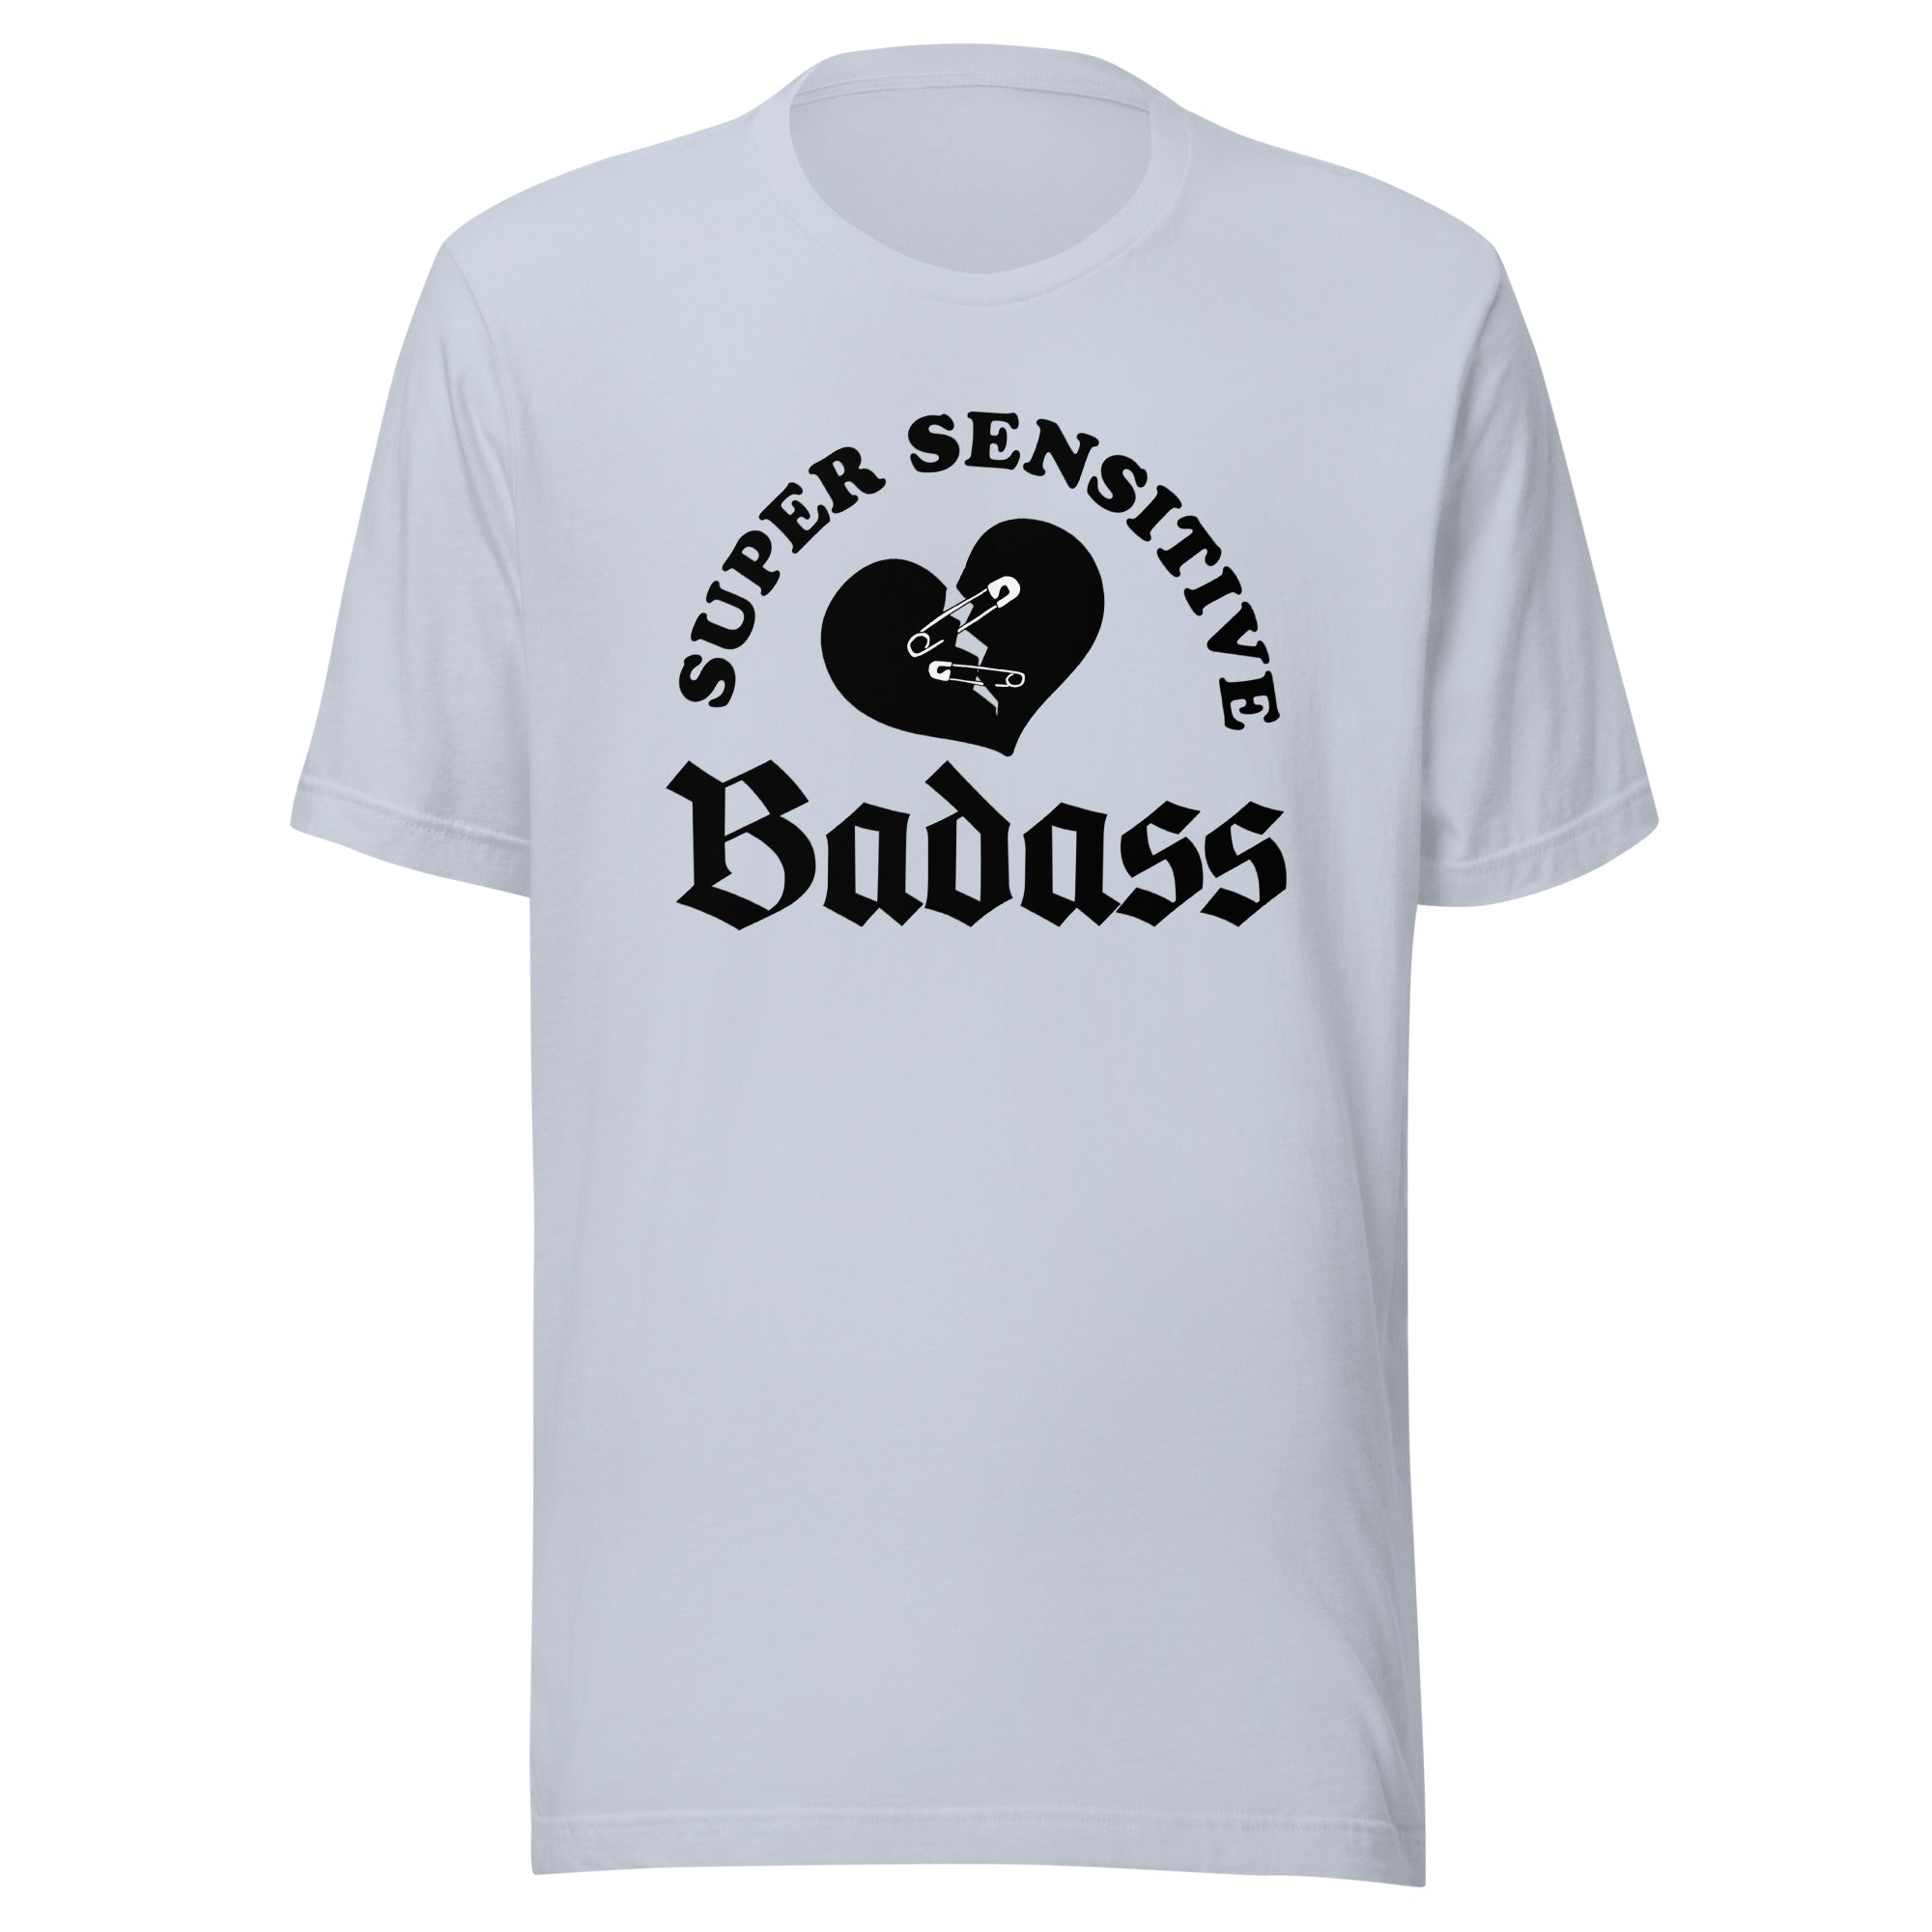 Super sensitive Badass Unisex t-shirt - Cotton Plus Cream